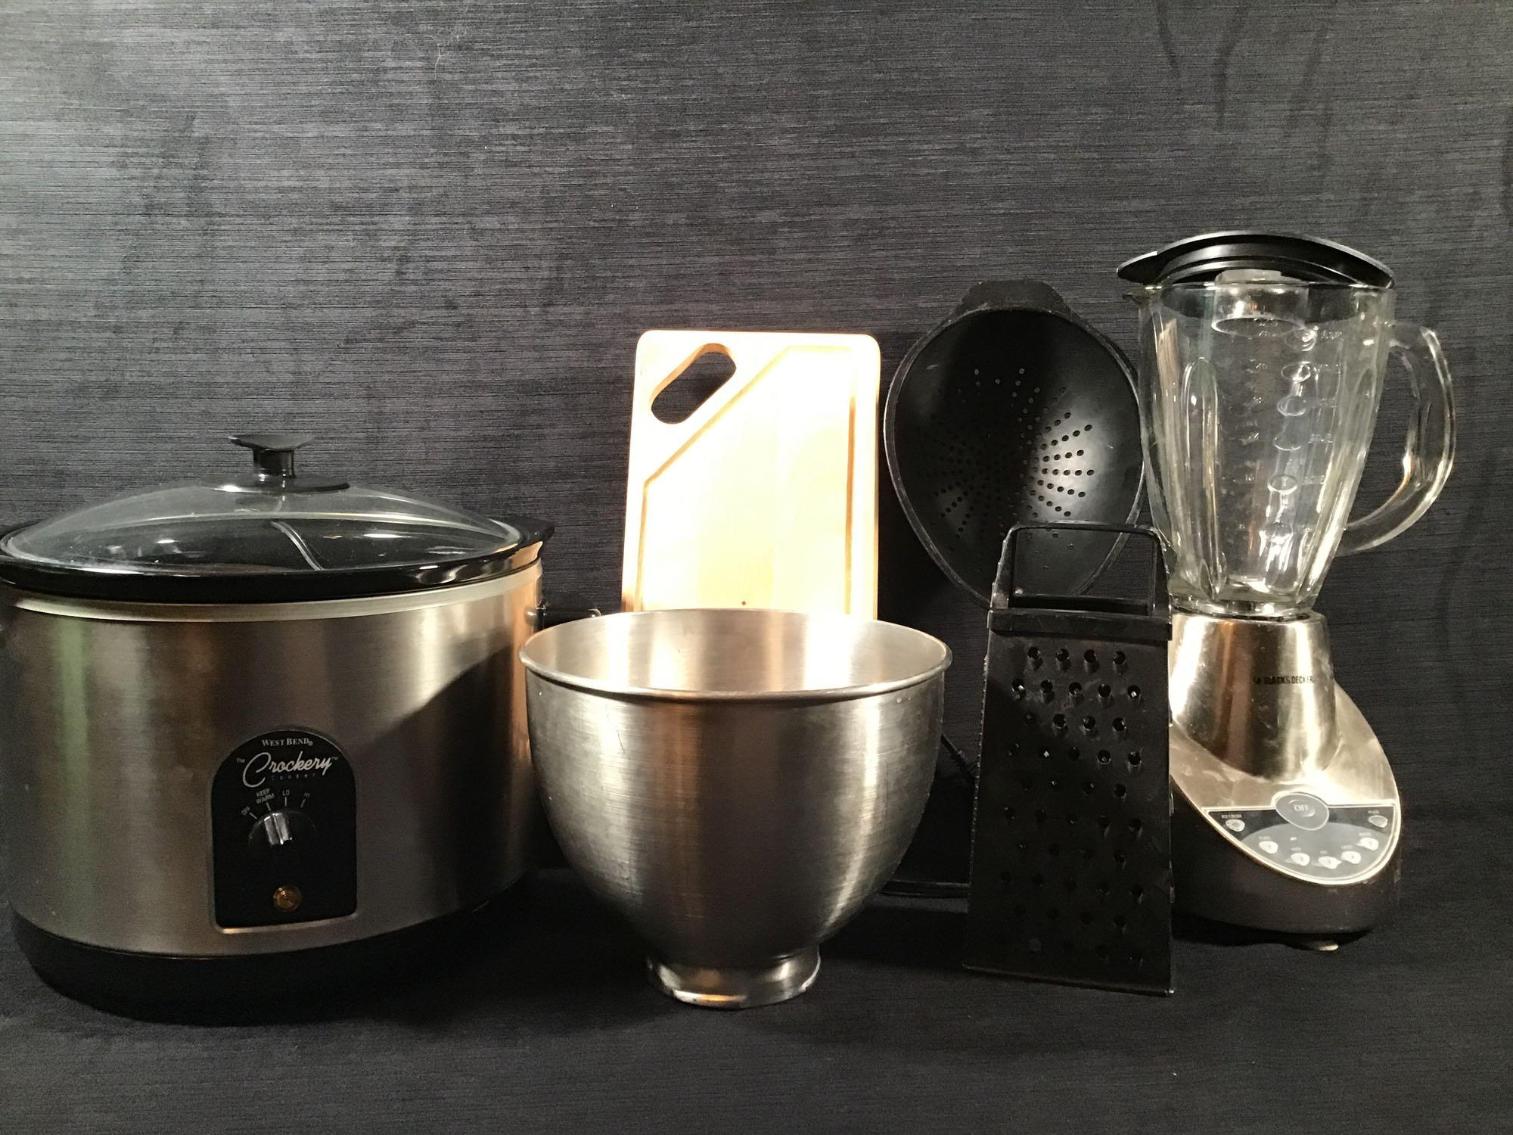 Image for Crock pot, Blender, and Kitchen Items